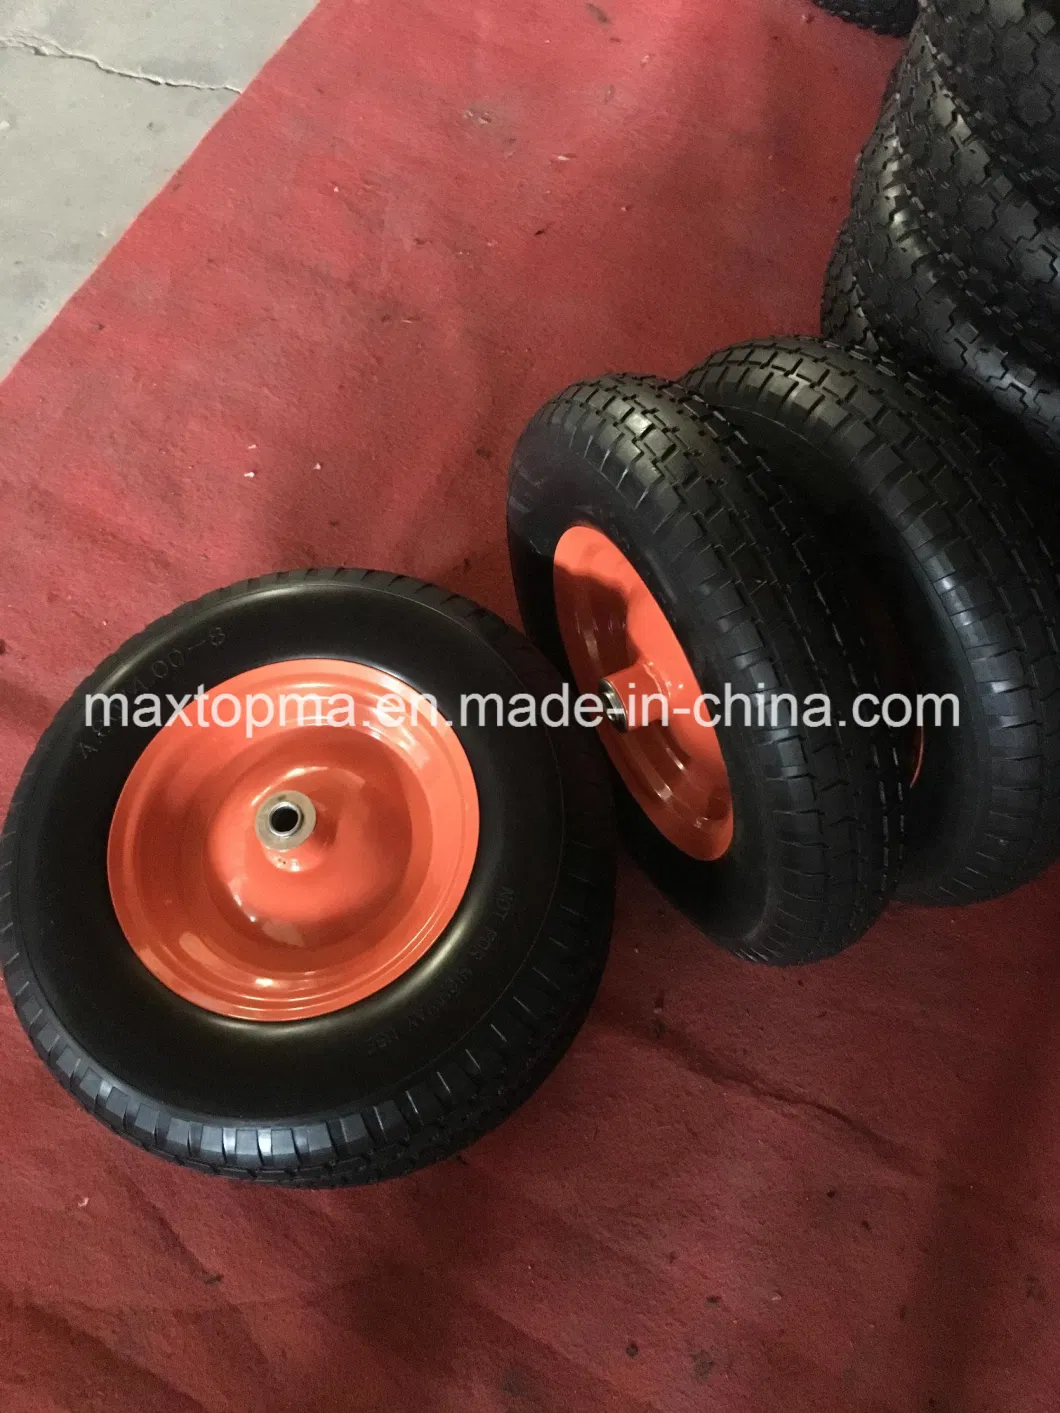 Maxtop Polyurethane Filling 13X500-6 PU Foam Flat Free Trolley Wheels